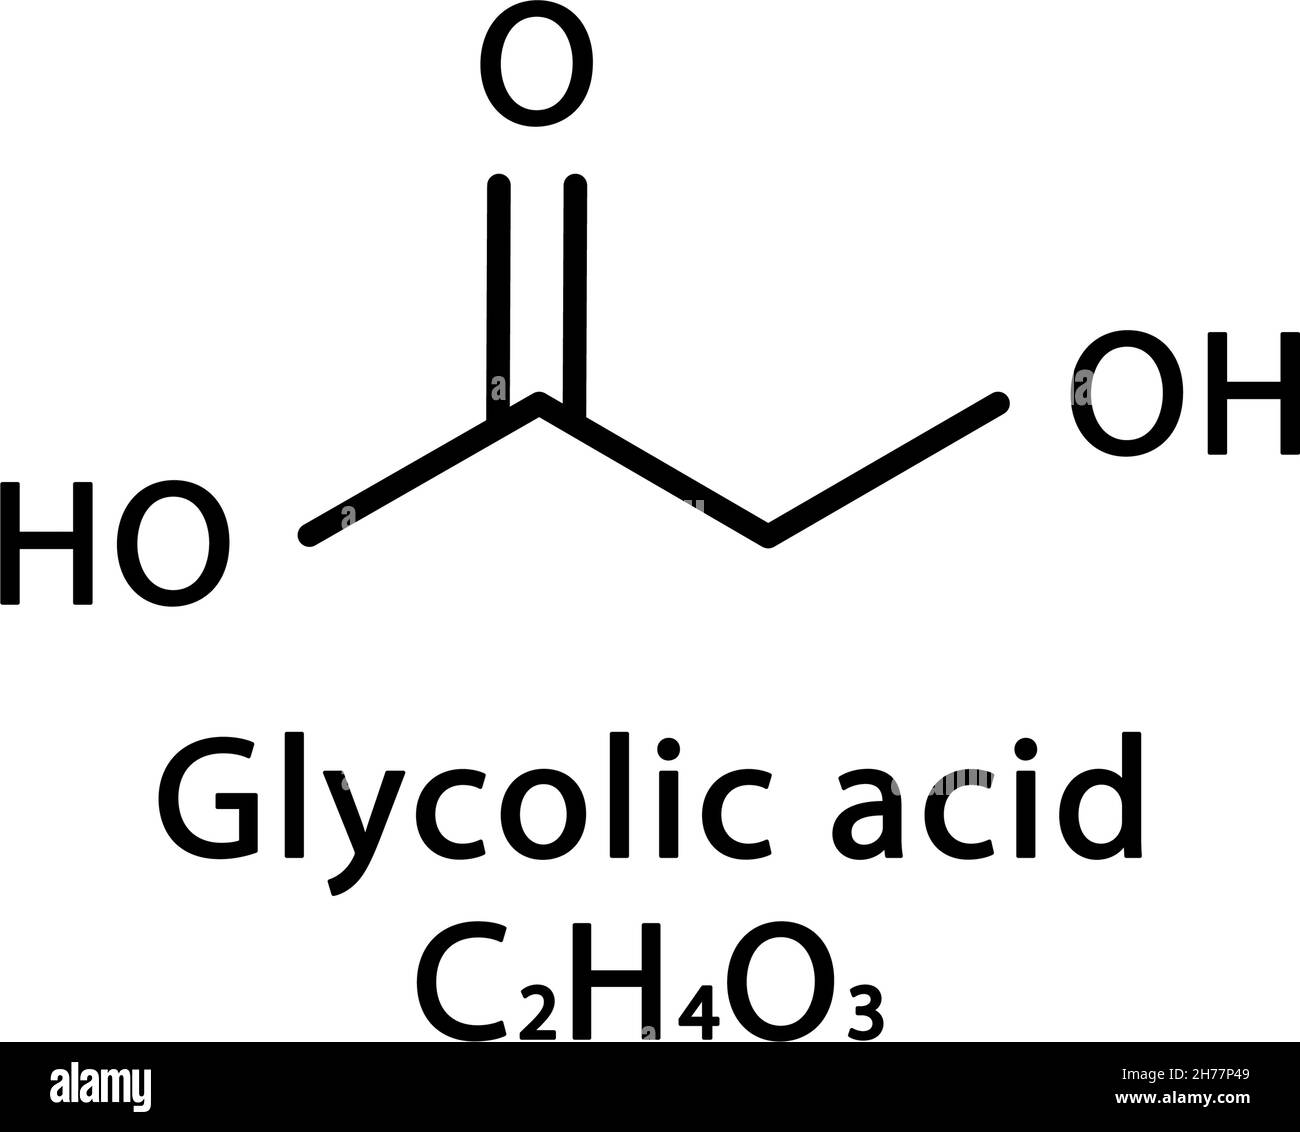 Селеновая кислота формула. Химическая формула мочи человека. Omega hydroxy acid. Цитрат и лактат химическая формула. Producing Glycolic acid from biomass.